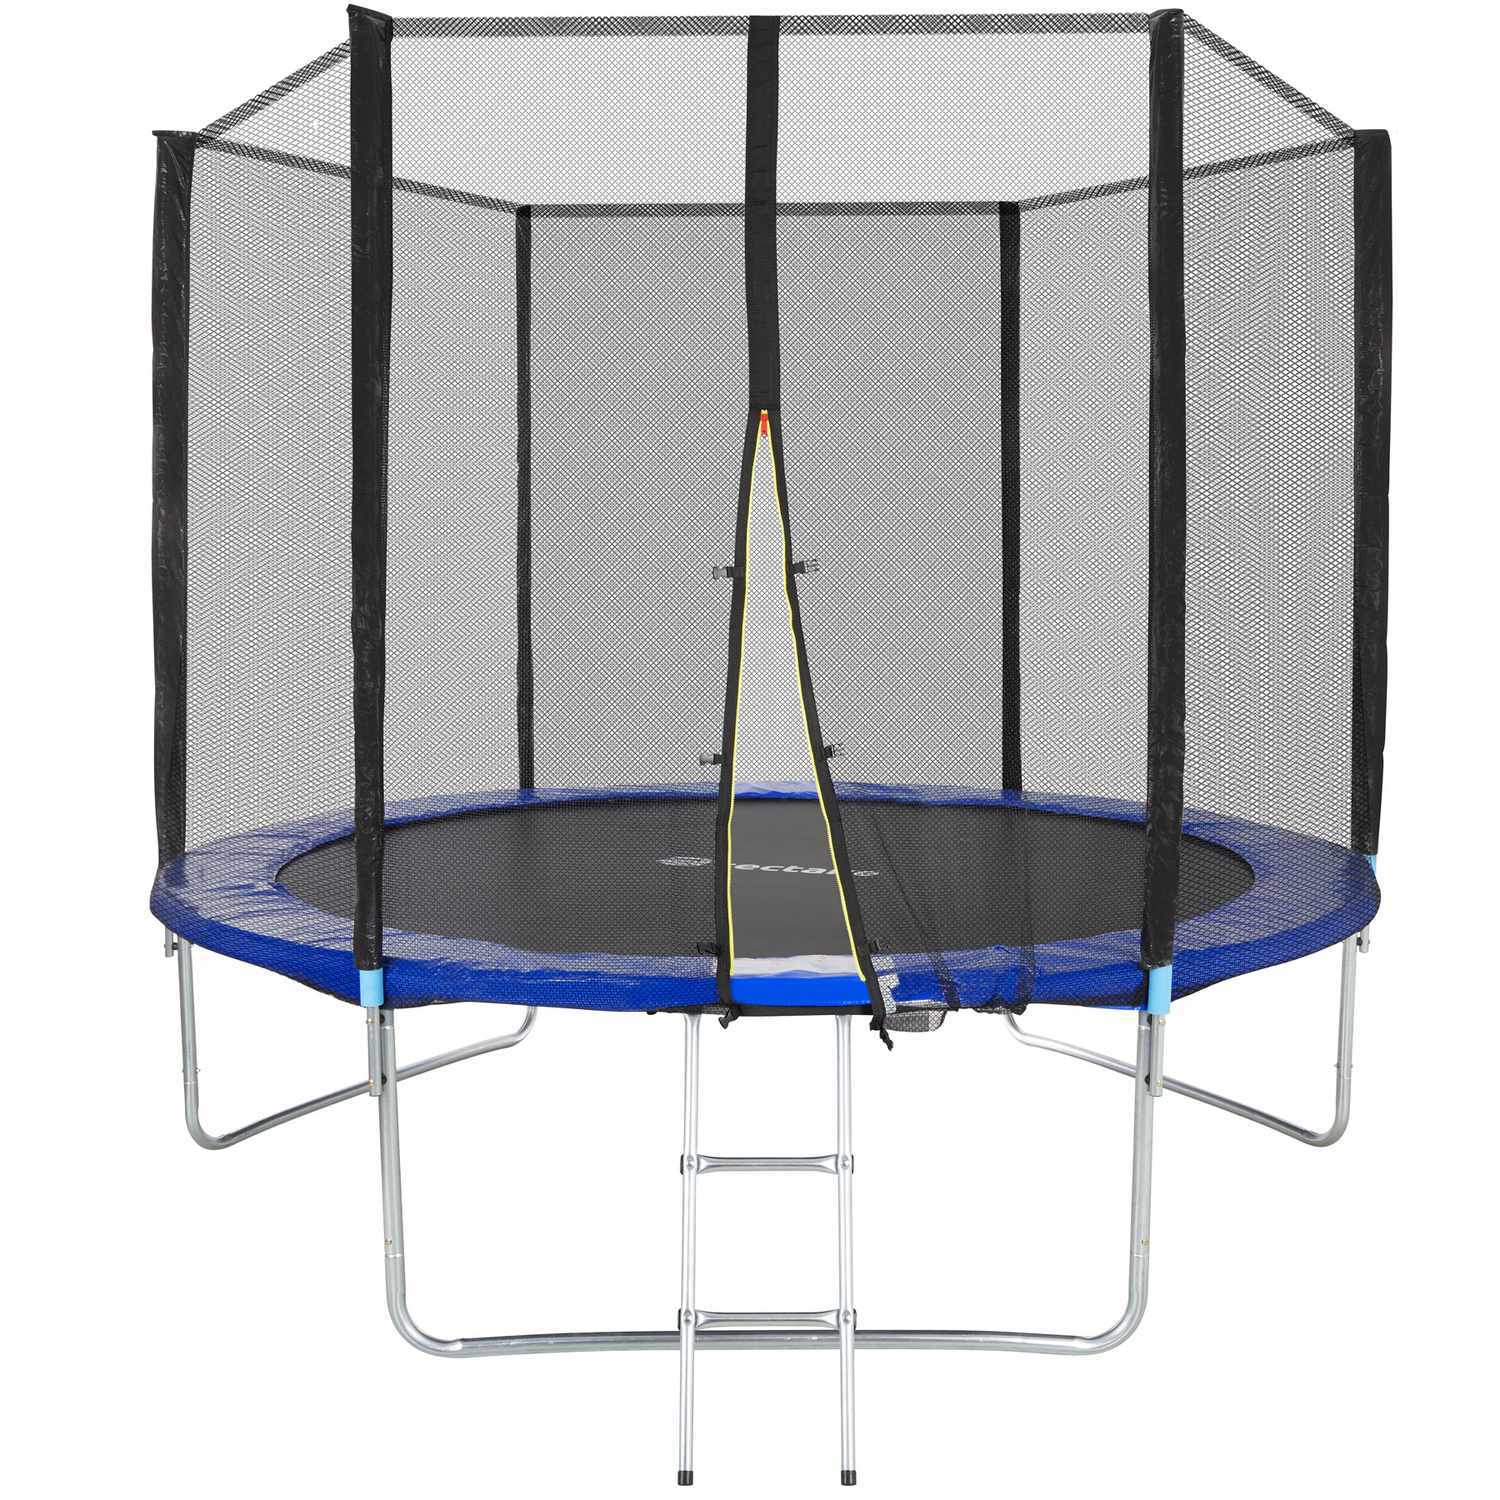 Trampolin med sikkerhedsnet - 305 cm | Elgiganten